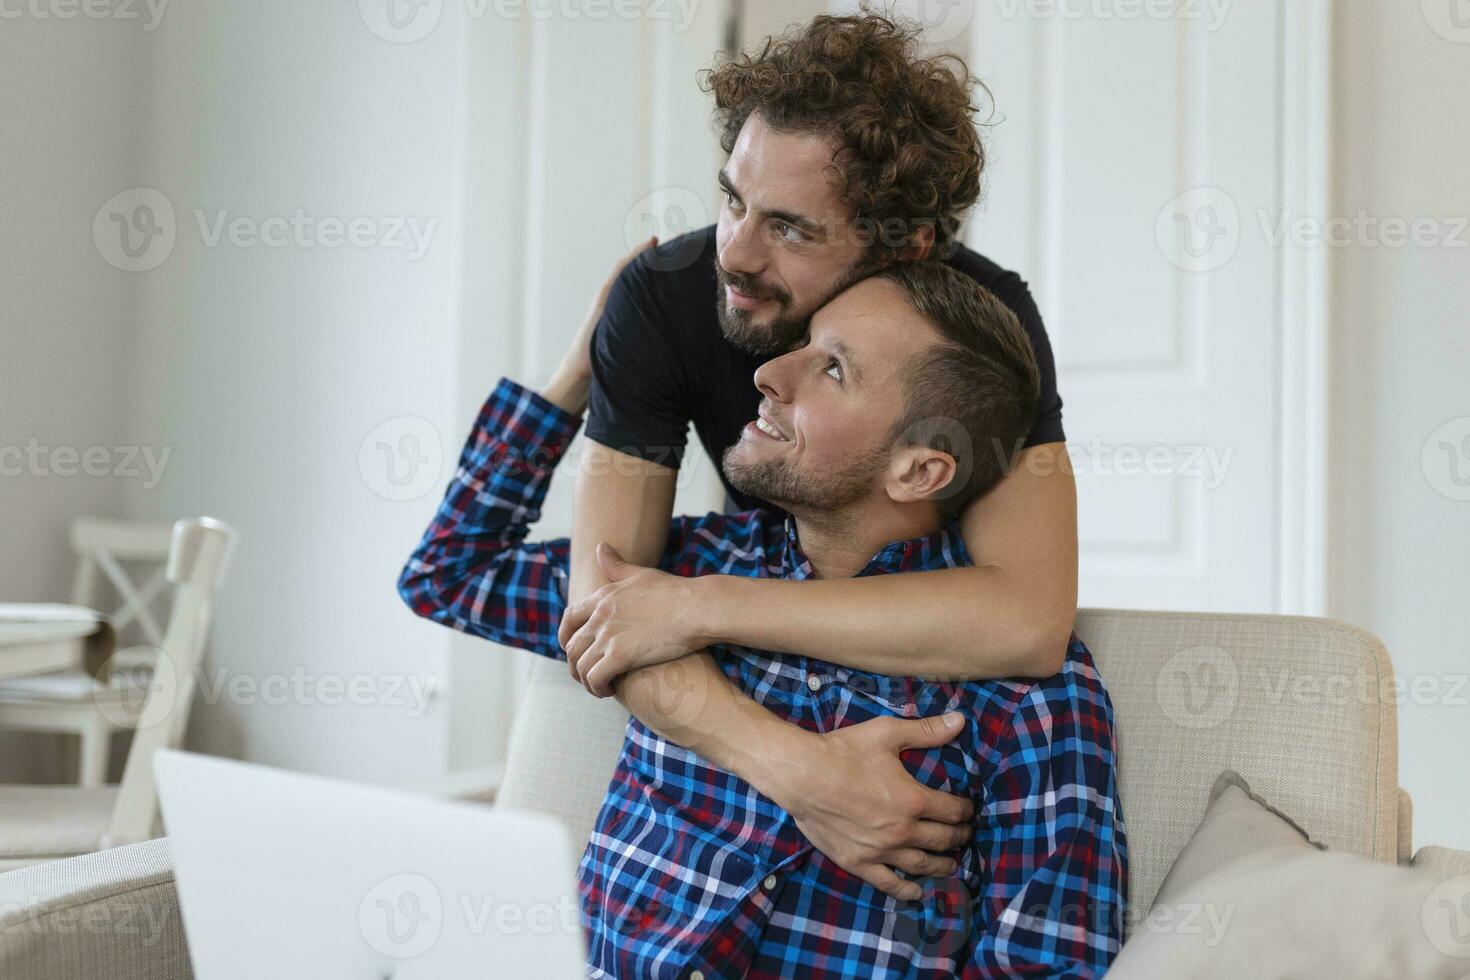 encantador gay Pareja riendo juntos mientras sentado en su vivo habitación a hogar. dos romántico joven masculino amantes teniendo divertido surf el Internet adentro. joven gay Pareja vivo juntos. foto